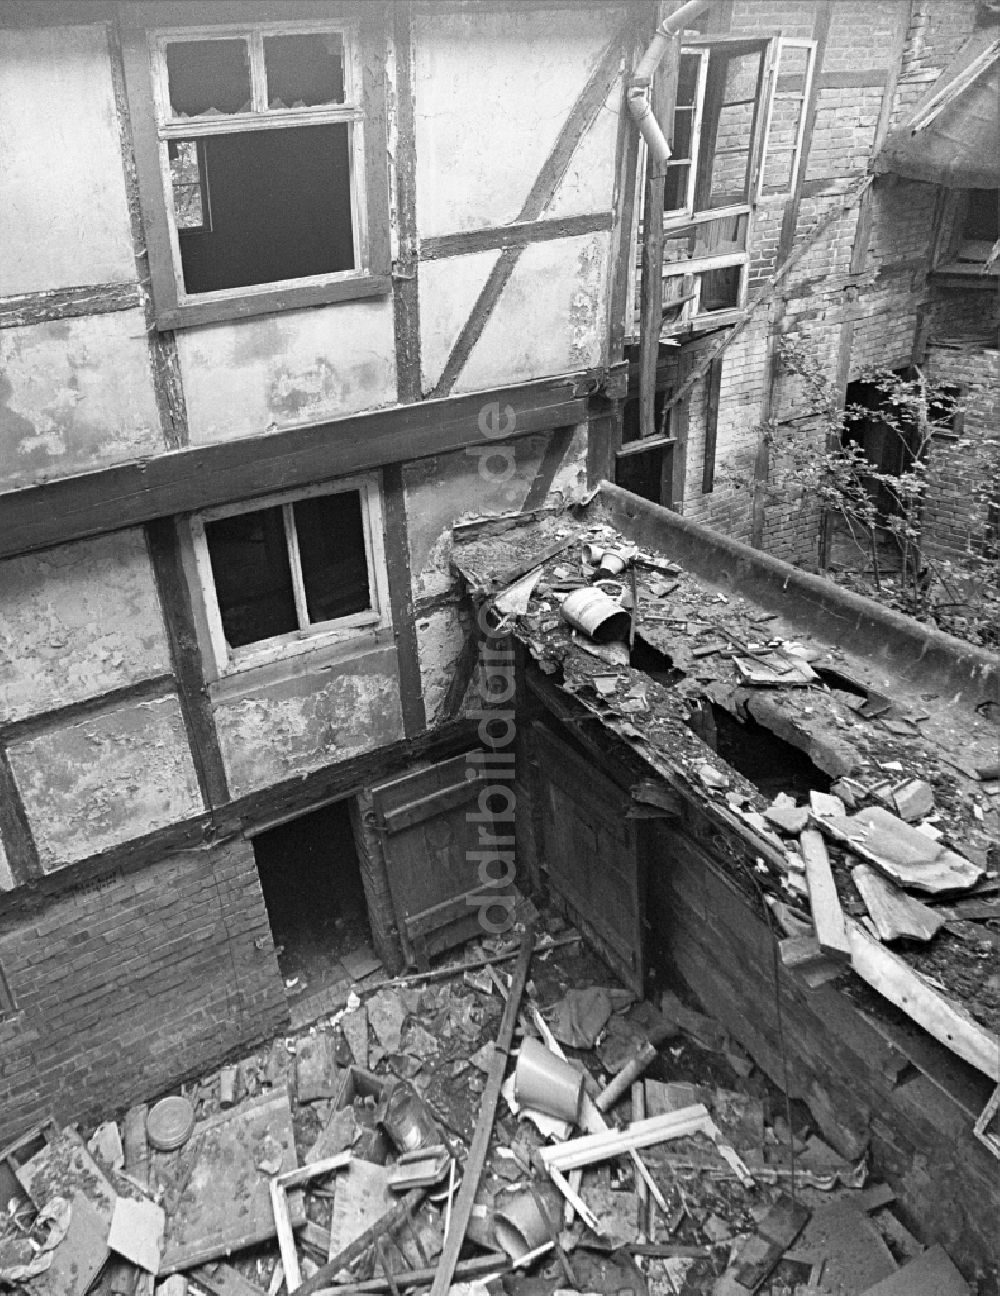 DDR-Bildarchiv: Halberstadt - Ruine des Fachwerkbaus an der Bakenstraße in Halberstadt in Sachsen-Anhalt in der DDR